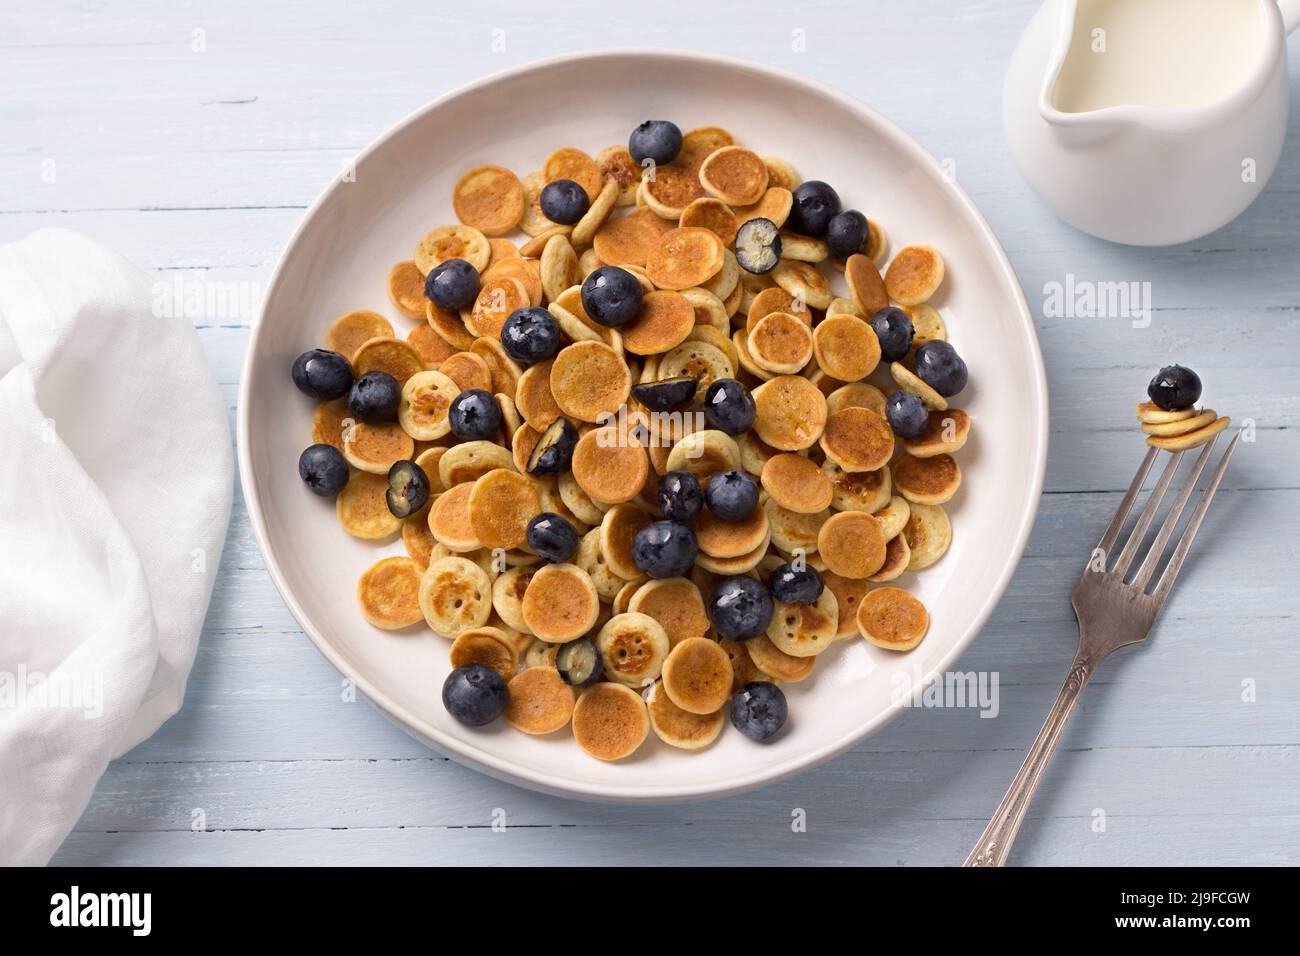 Piatto di mini pancake con cereali con crema, miele e frutti di bosco su sfondo blu chiaro. Cibo alla moda. Colazione fatta in casa. Vista dall'alto Foto Stock